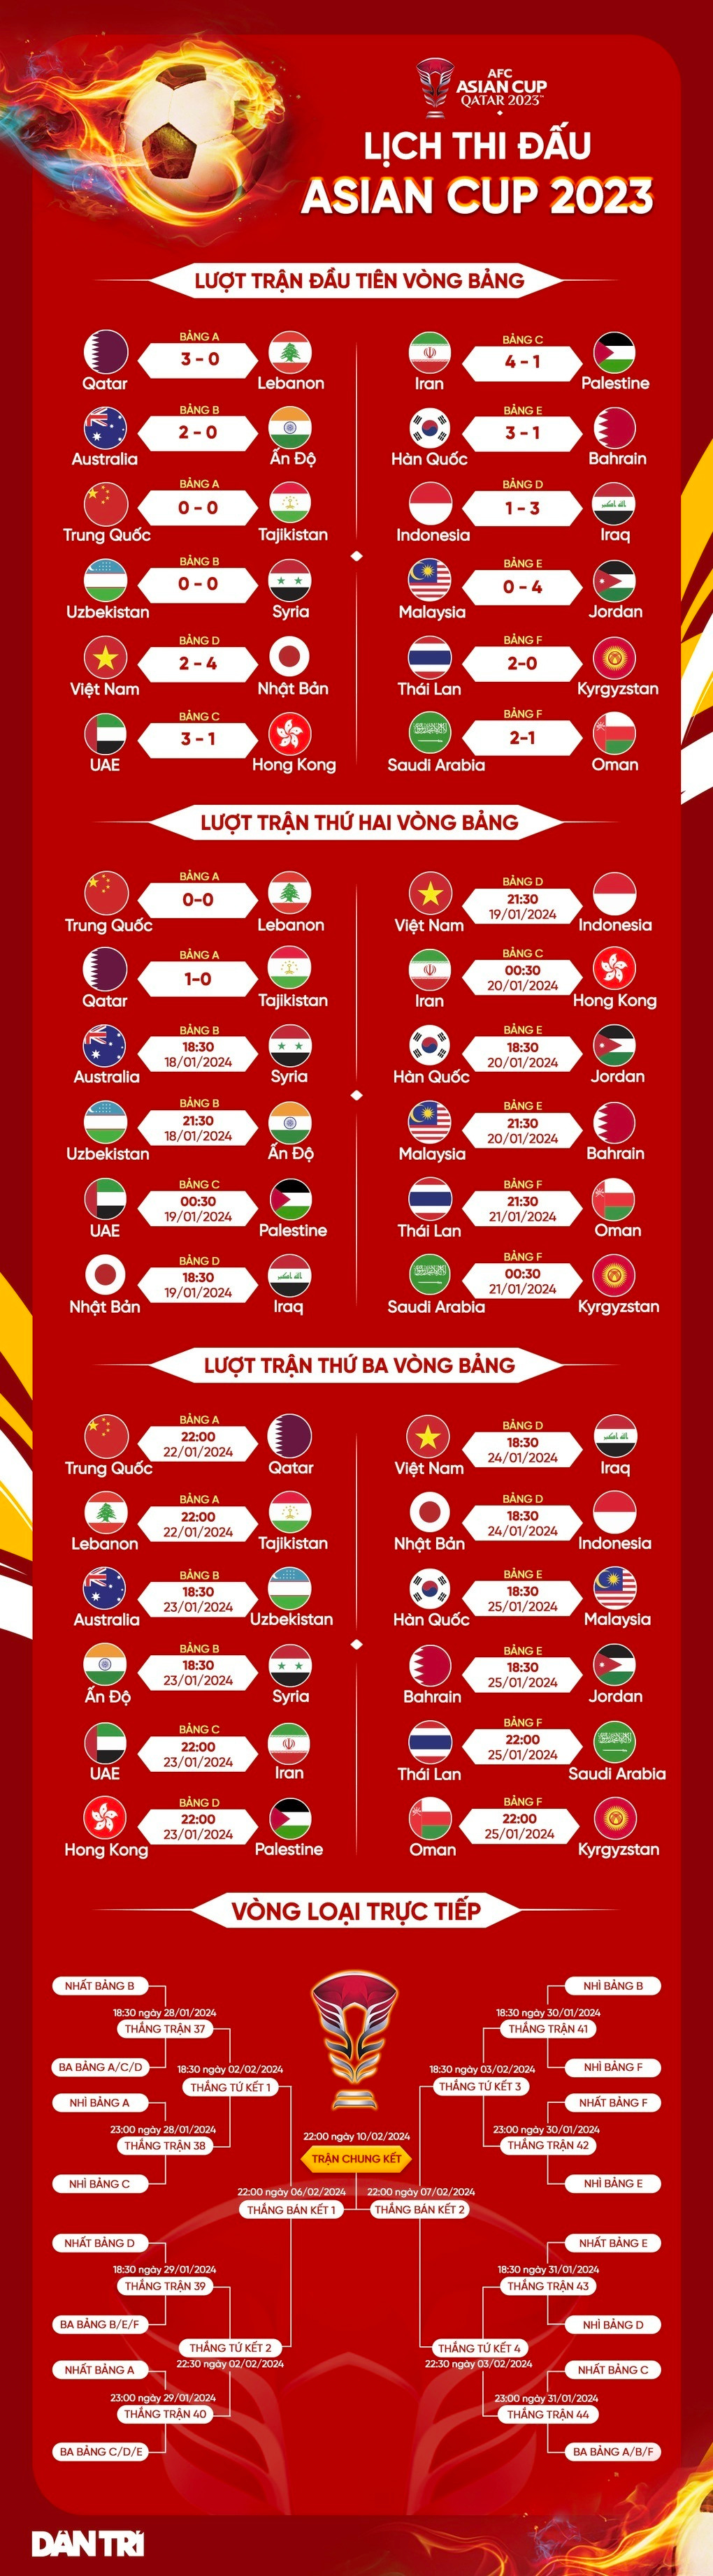 HLV Troussier: Trận đấu gặp Indonesia để khẳng định vị thế ở Đông Nam Á - 3